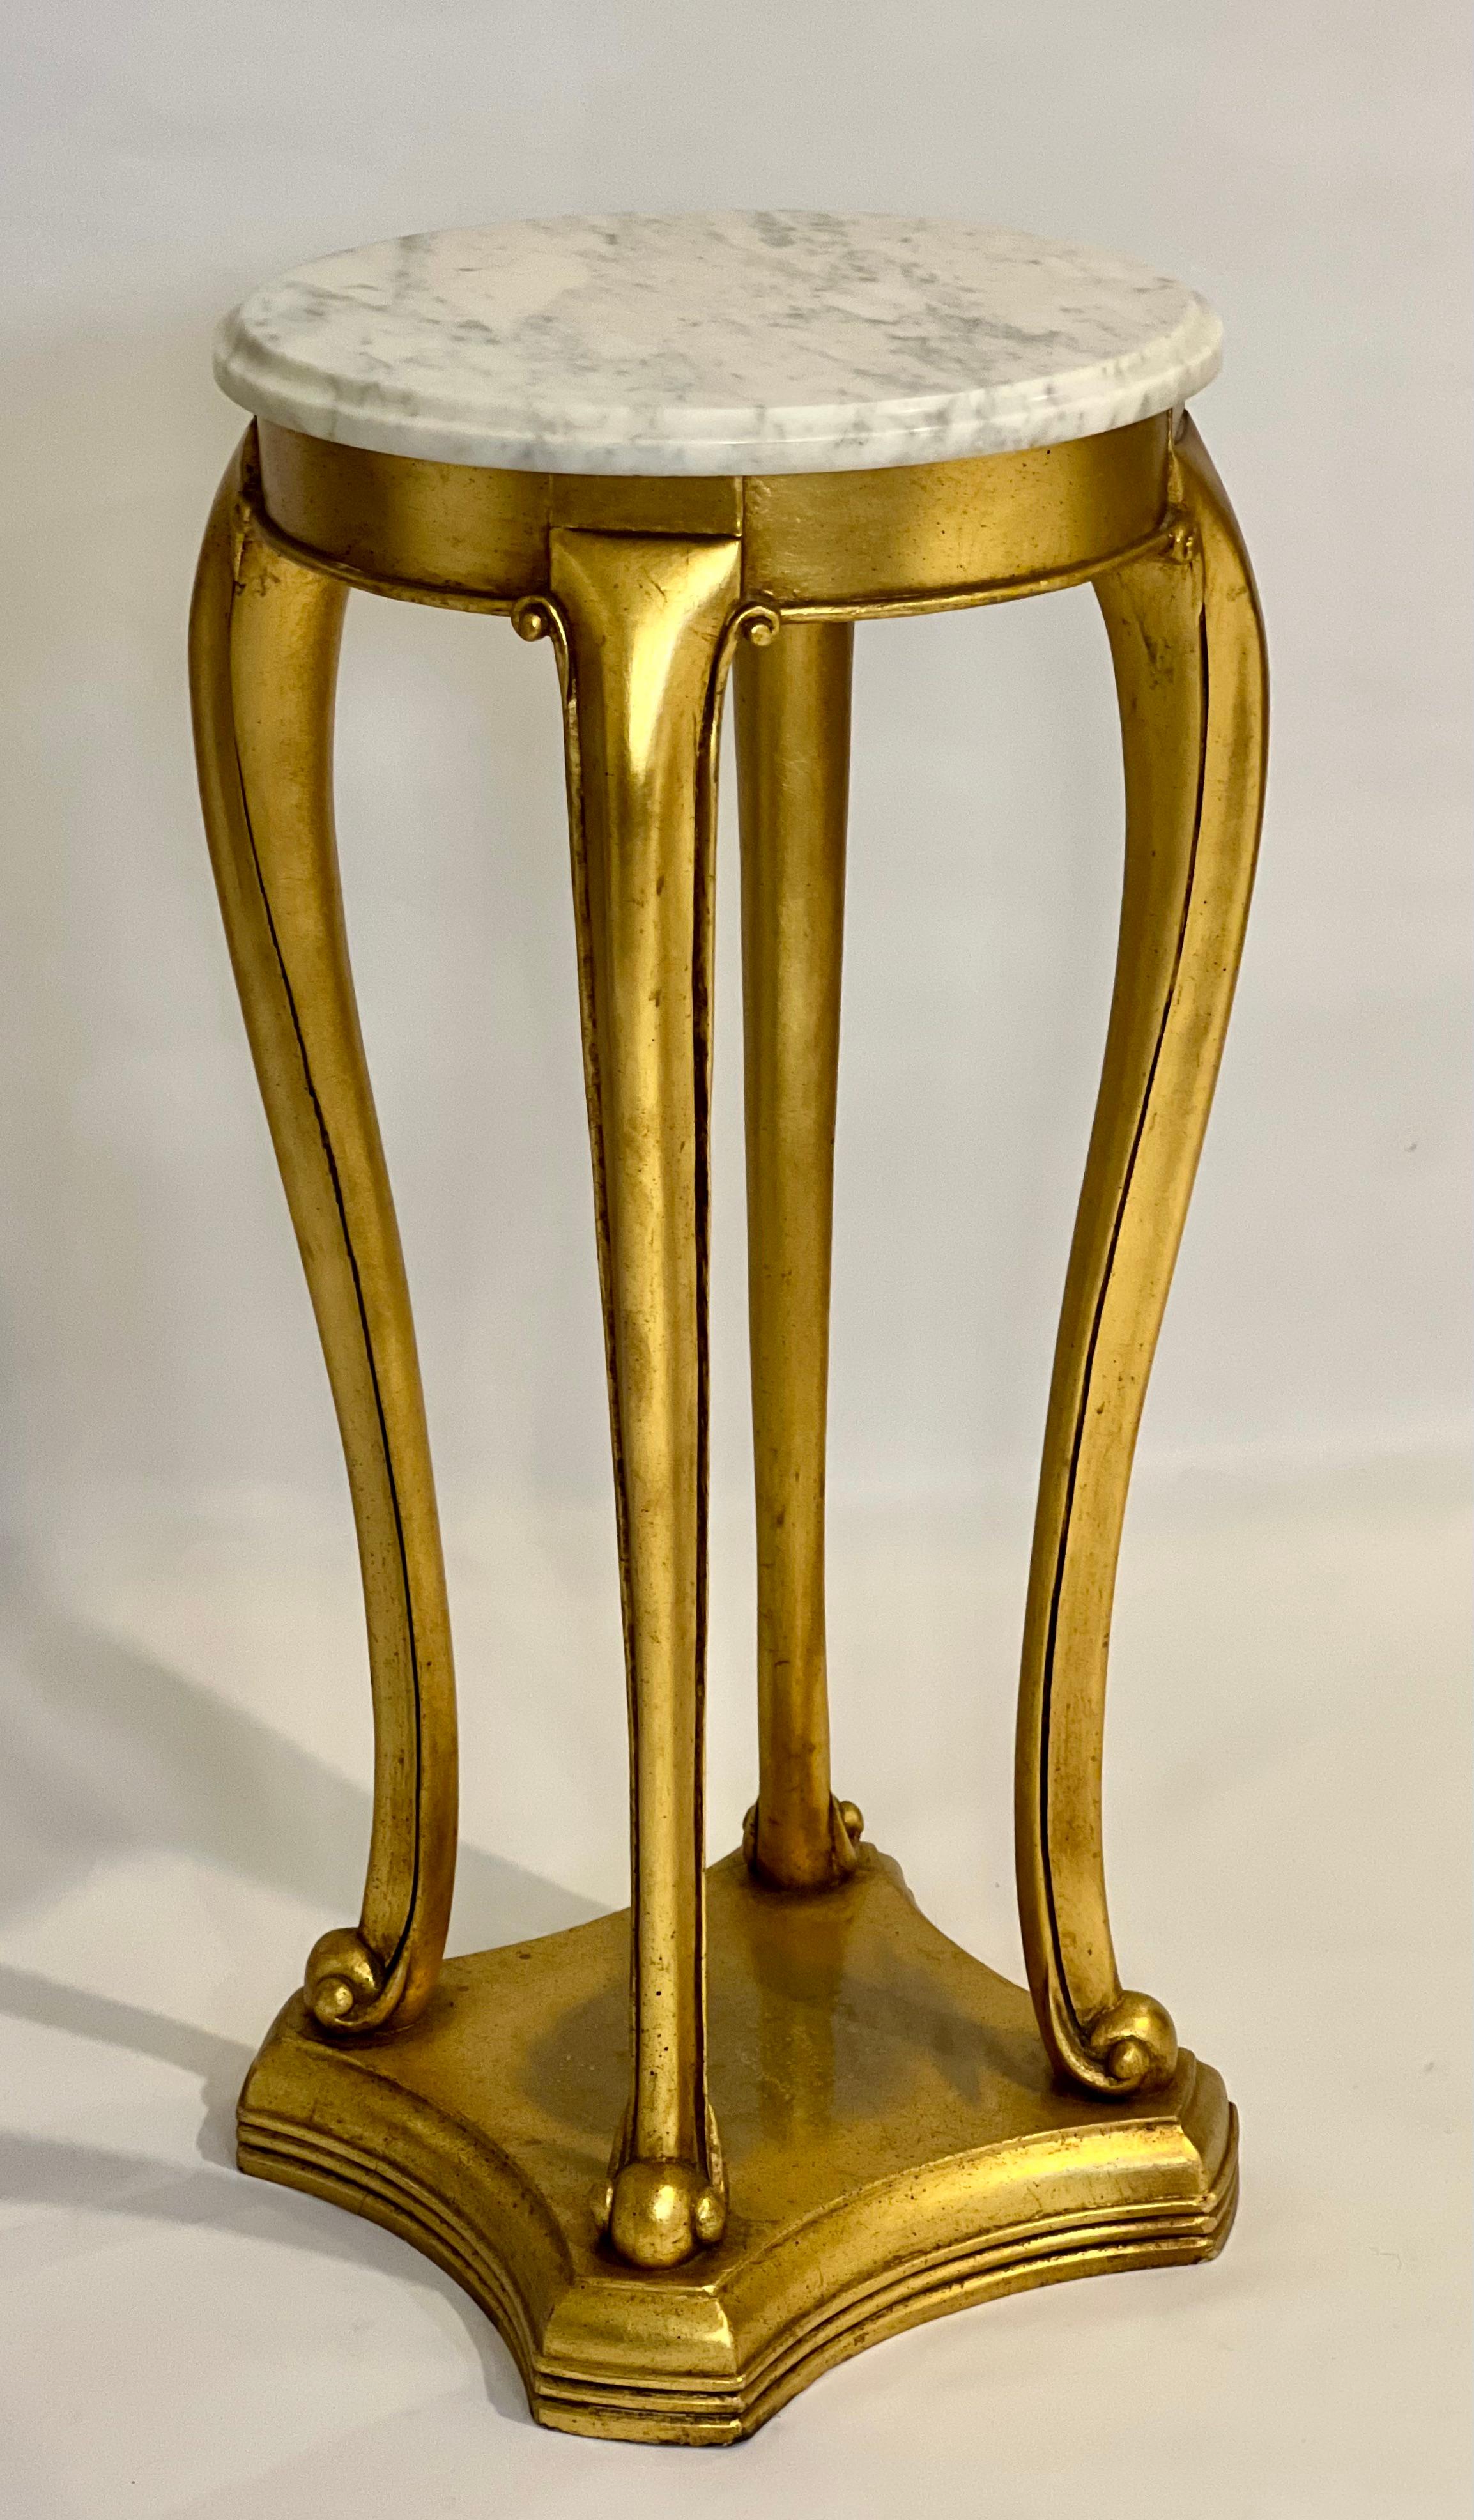 Ancien piédestal ou cache-pot en bois doré et marbre de style Regency, C.C. fin du 19ème siècle.

Fantastique piédestal doré à jambes cabrioles et pieds à volutes reposant sur une base à gradins incurvée. Des détails sculptés soulignent la base